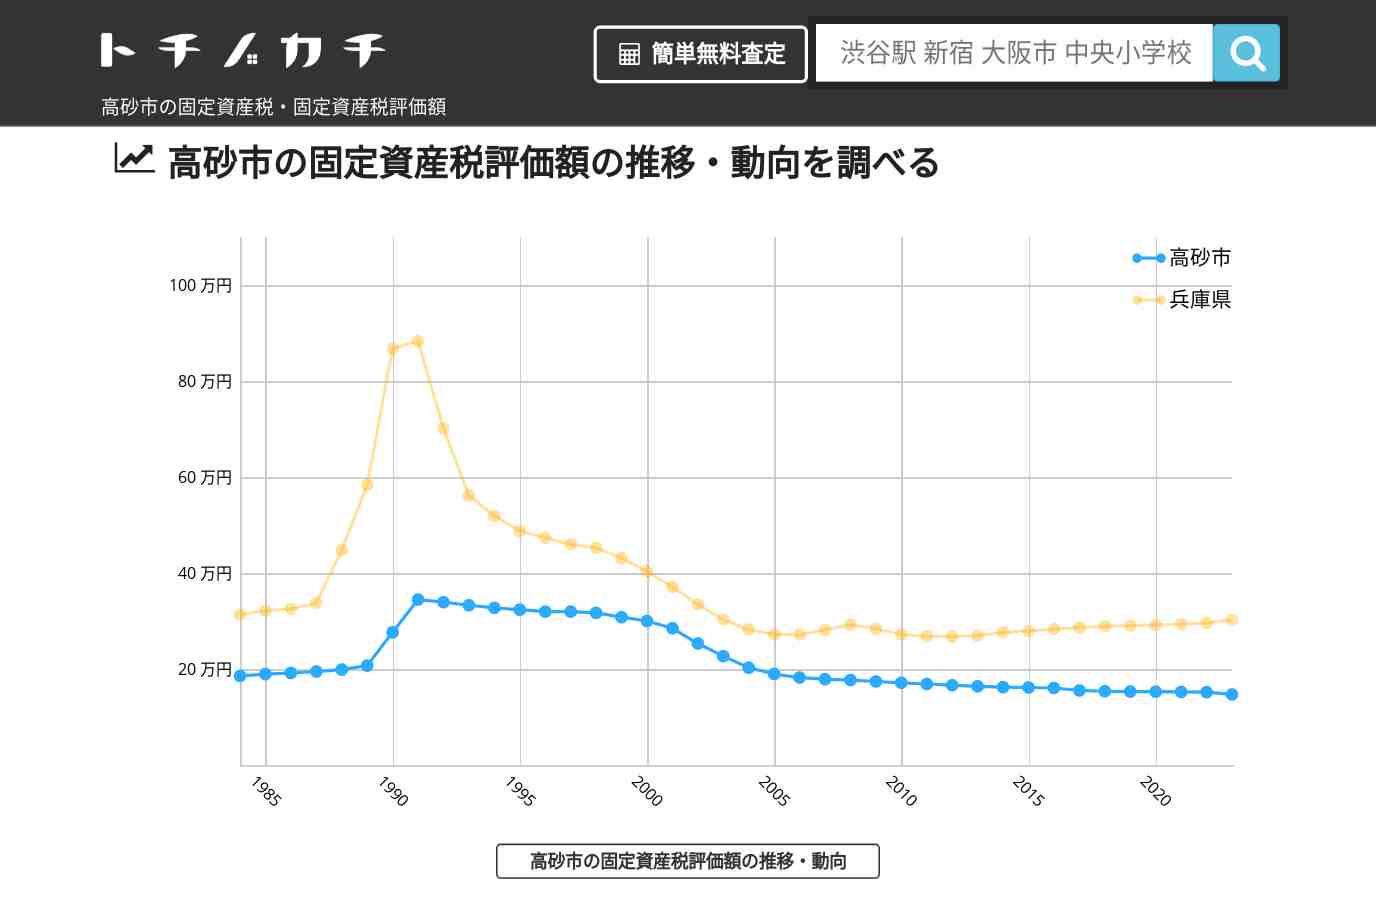 曽根小学校(兵庫県 高砂市)周辺の固定資産税・固定資産税評価額 | トチノカチ